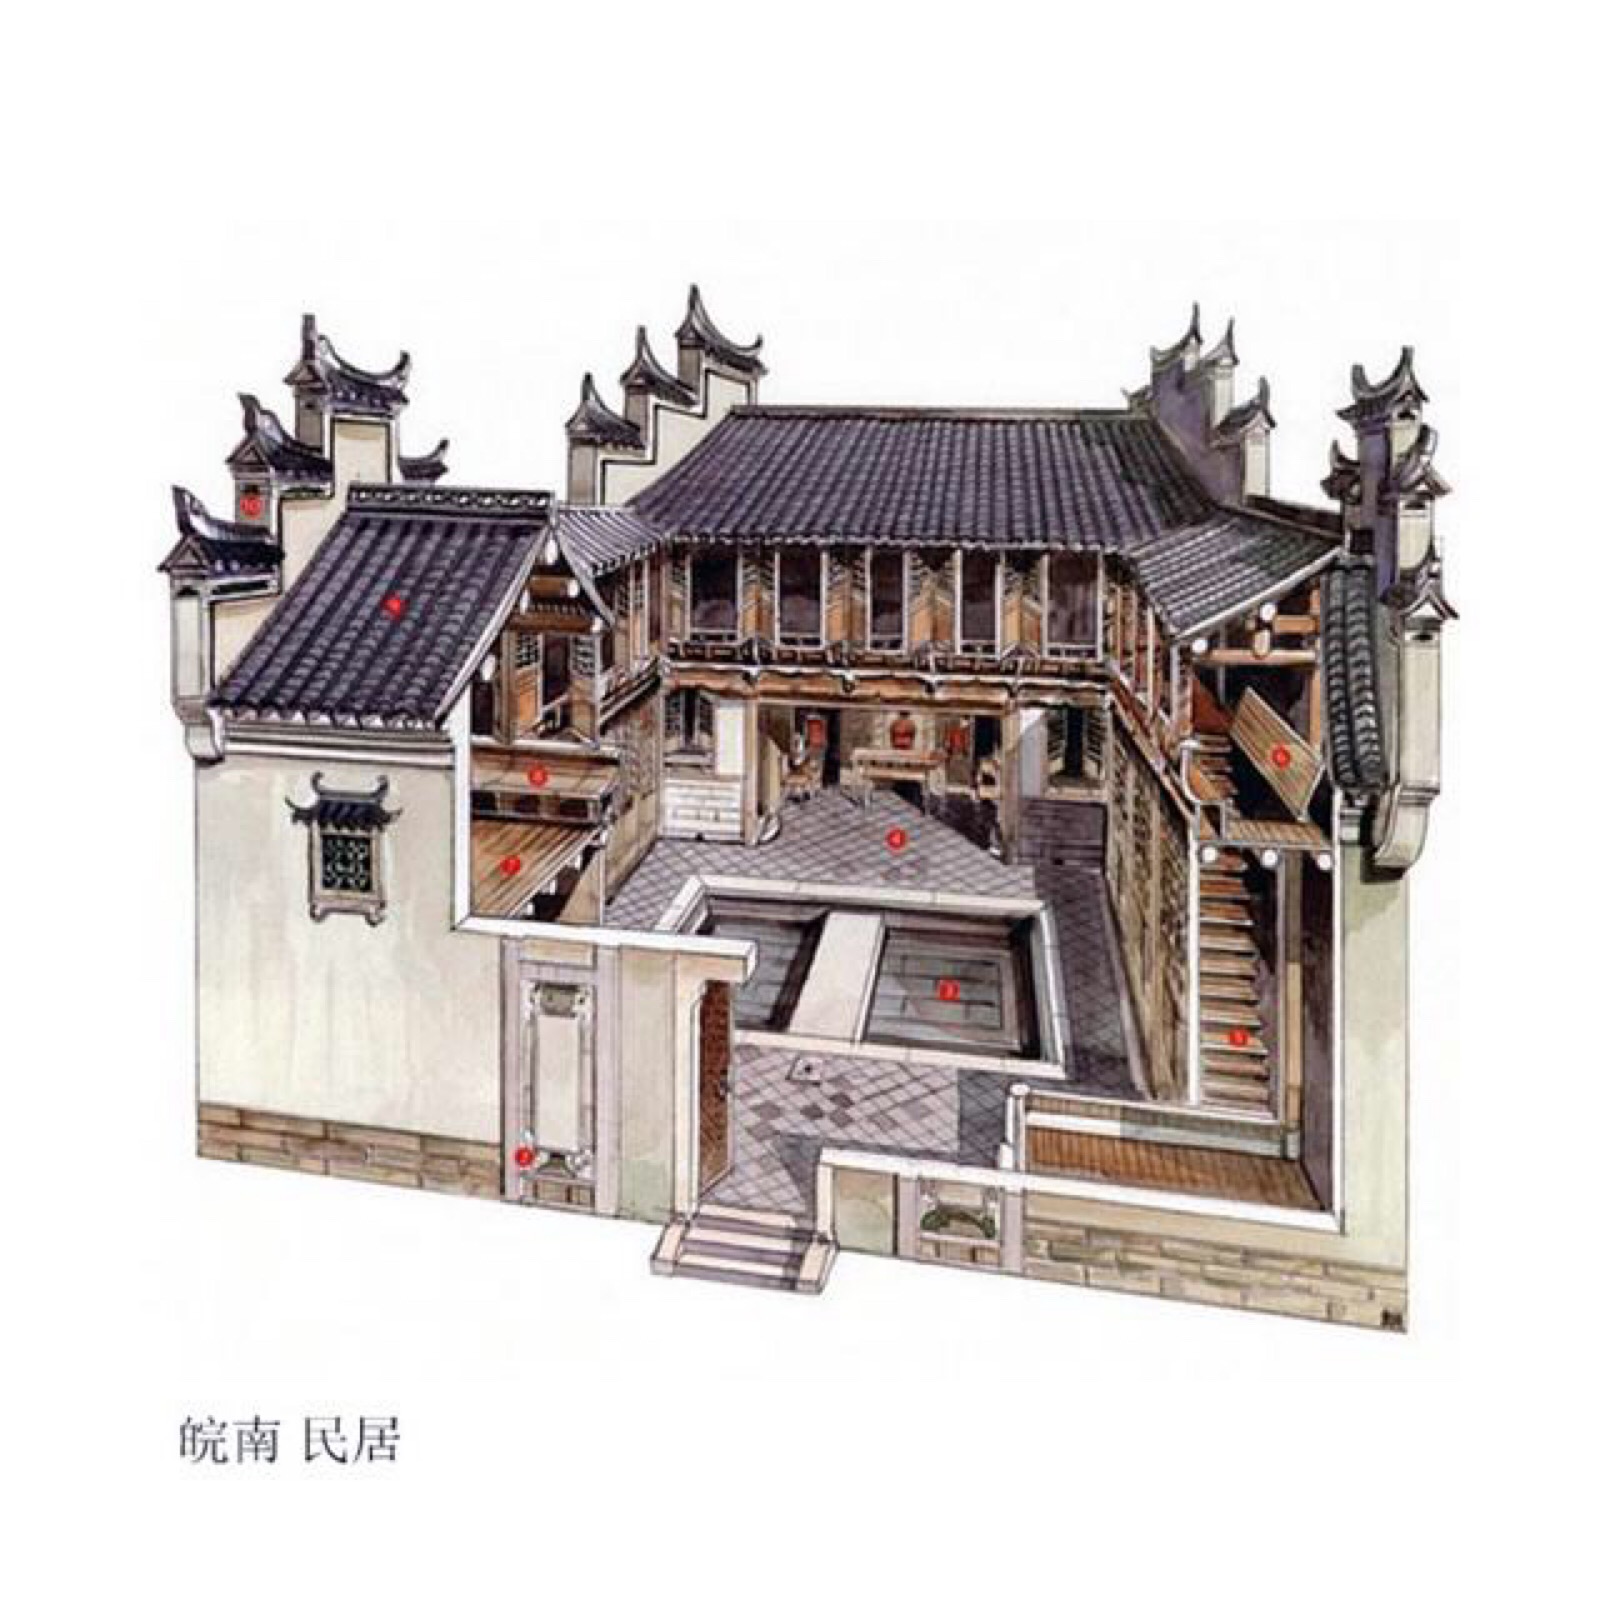 穿墙透壁 剖析中国经典古建筑